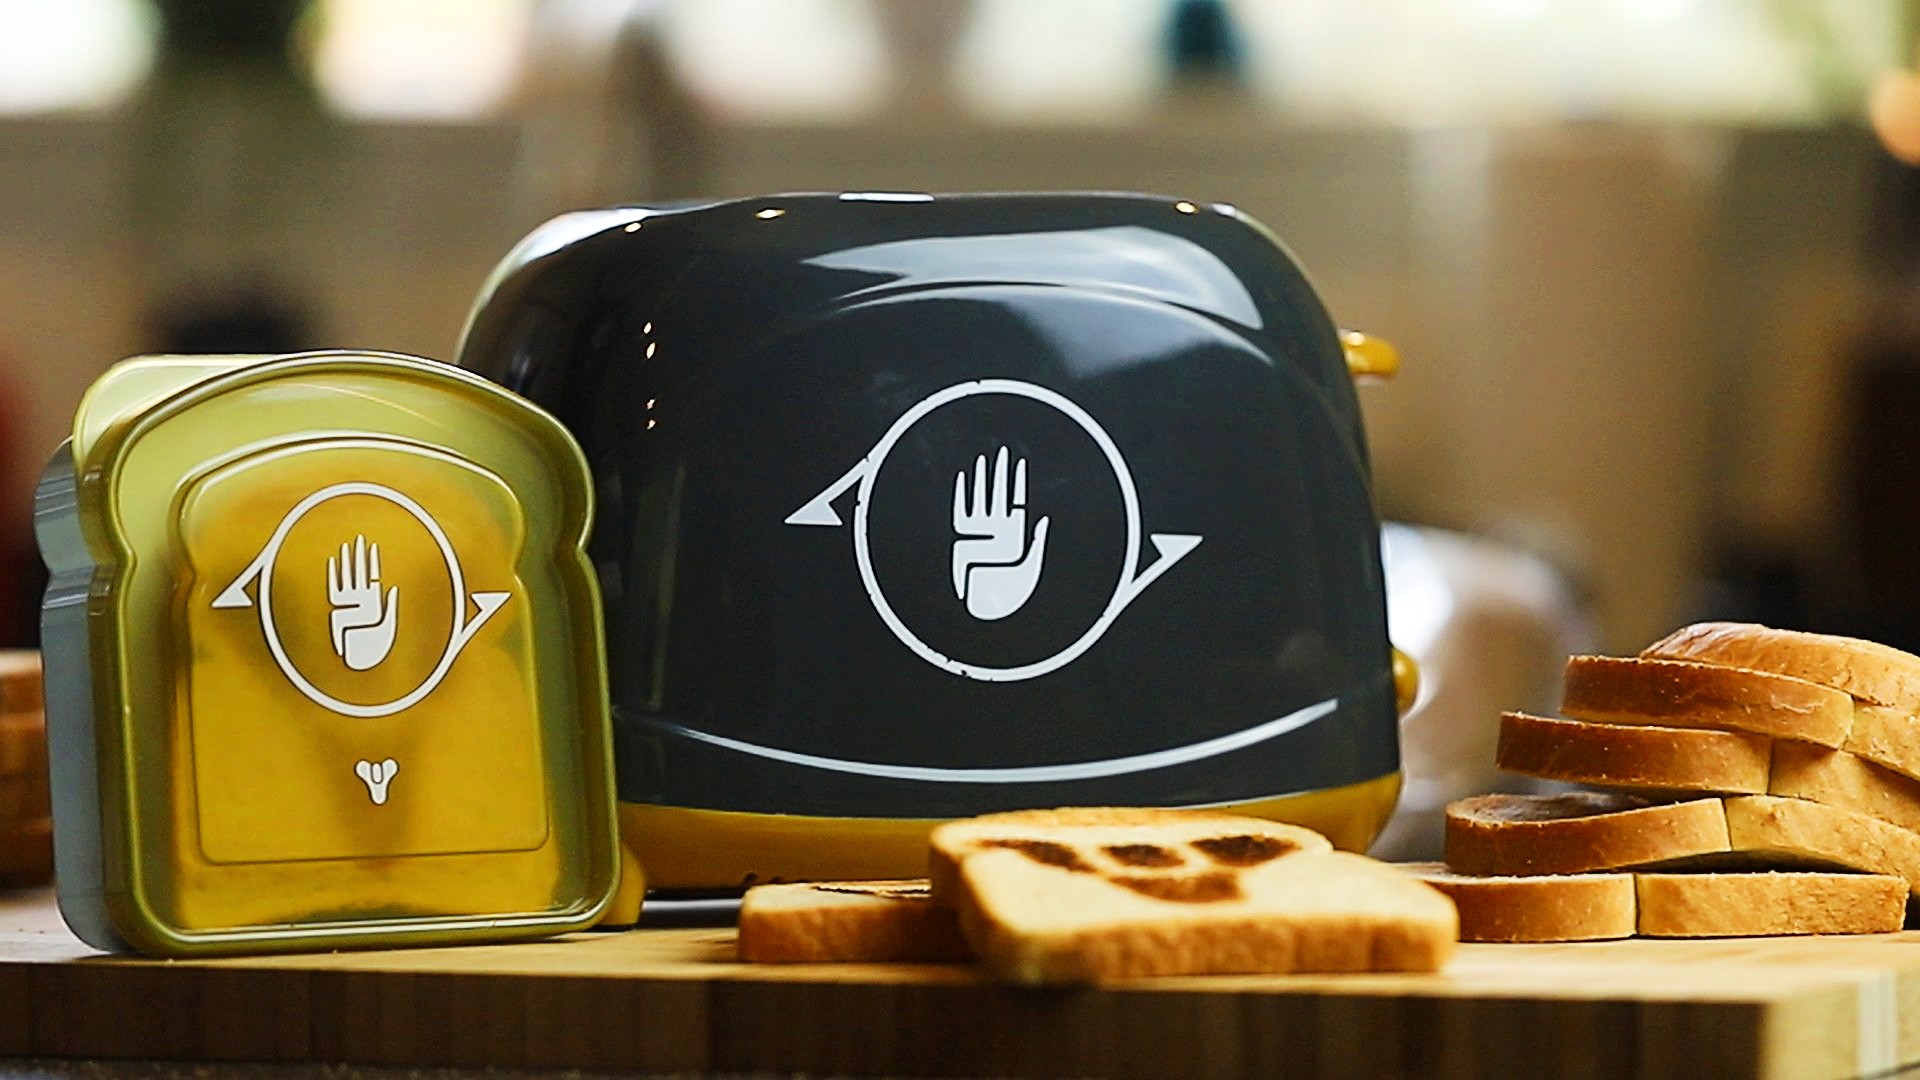 Wannan Destiny 2 toaster na iya zama naku akan $84.99